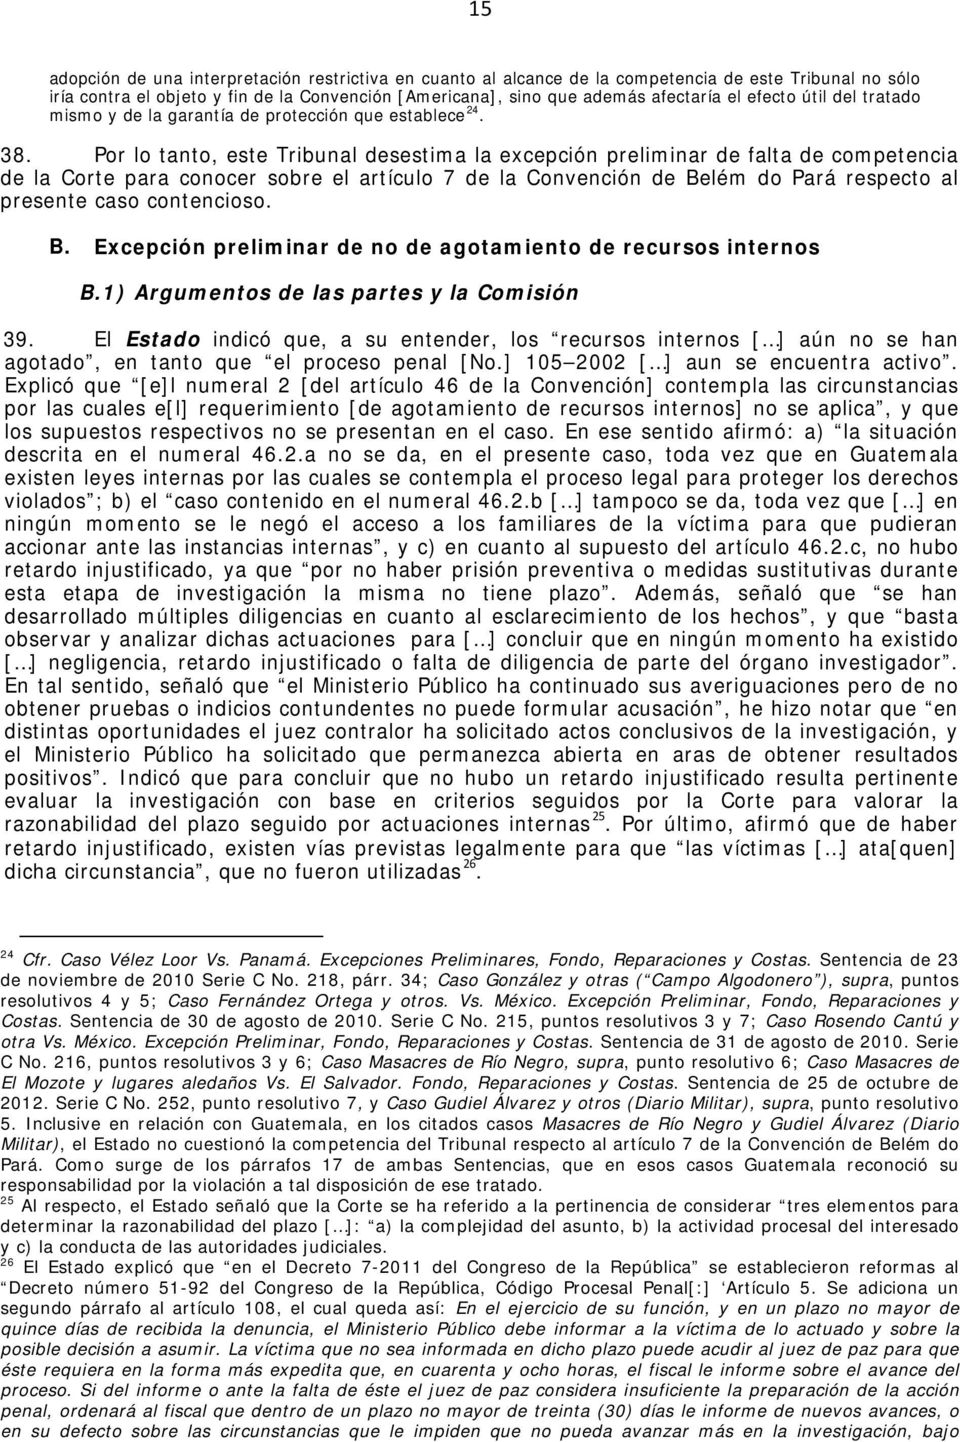 Por lo tanto, este Tribunal desestima la excepción preliminar de falta de competencia de la Corte para conocer sobre el artículo 7 de la Convención de Belém do Pará respecto al presente caso